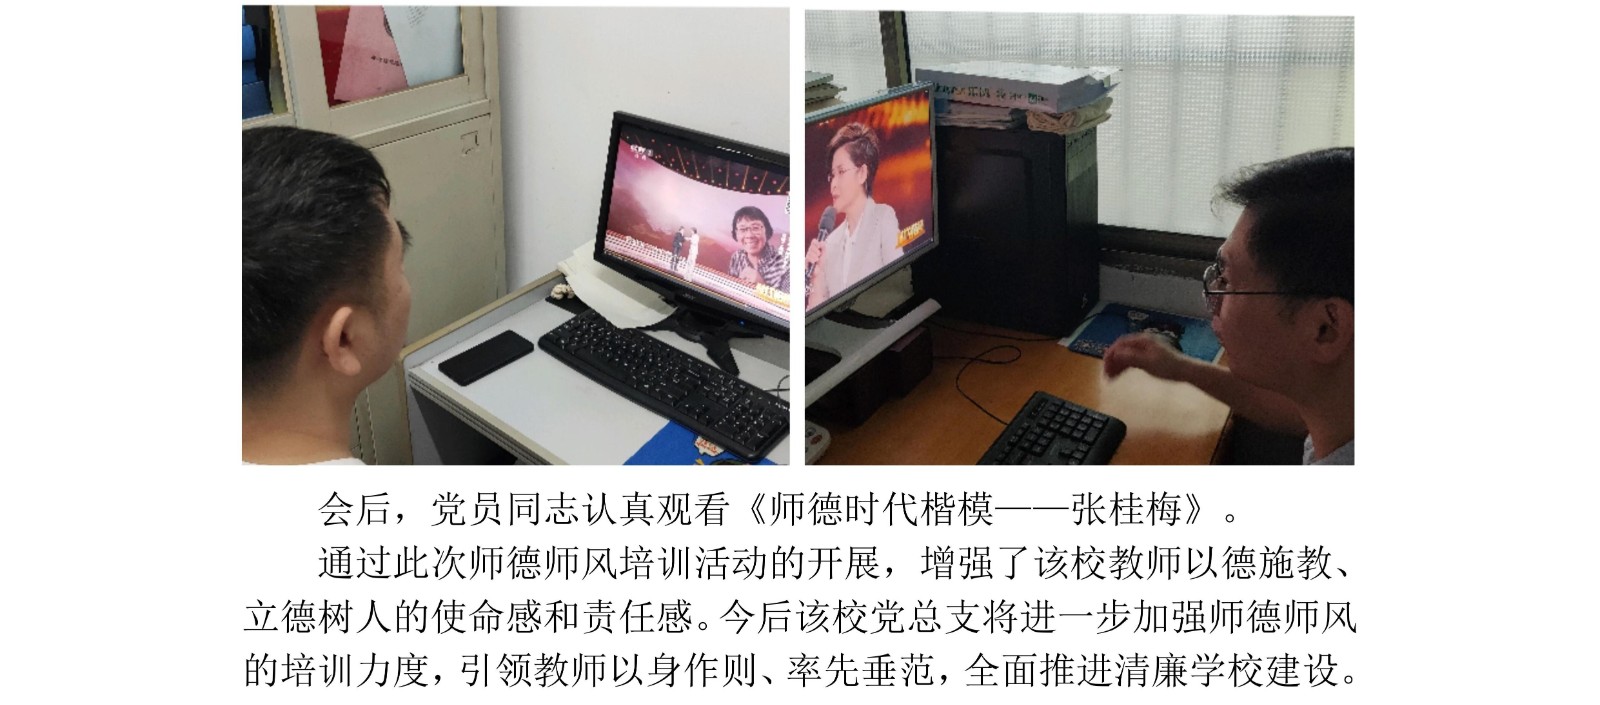 衡阳市实验中学清廉学校建设第6期简报_02.jpg